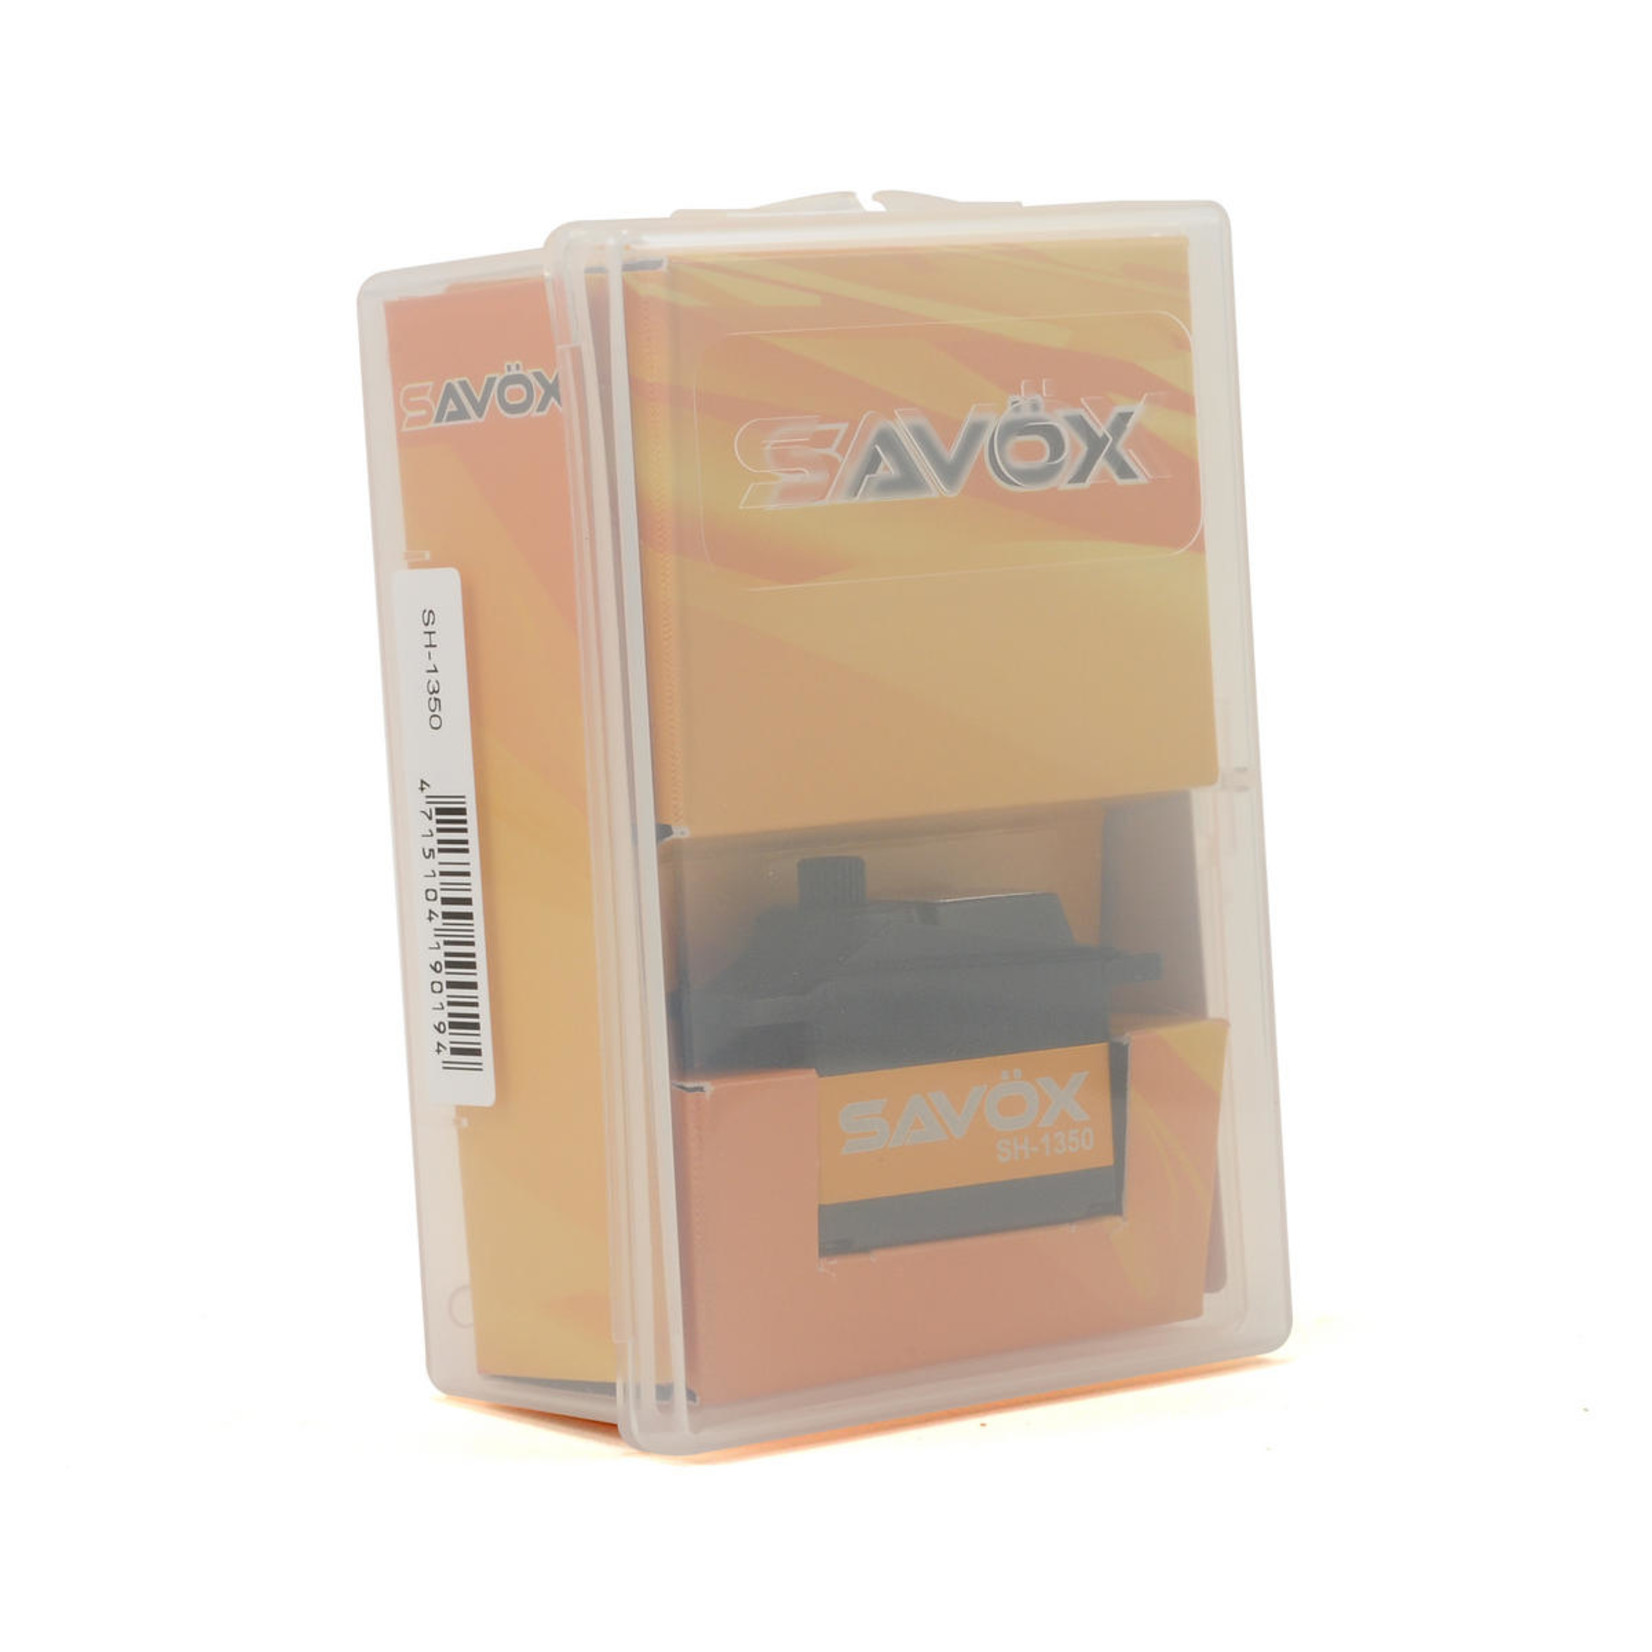 Savox Savox Digital "High Torque" Mini Servo #SH-1350